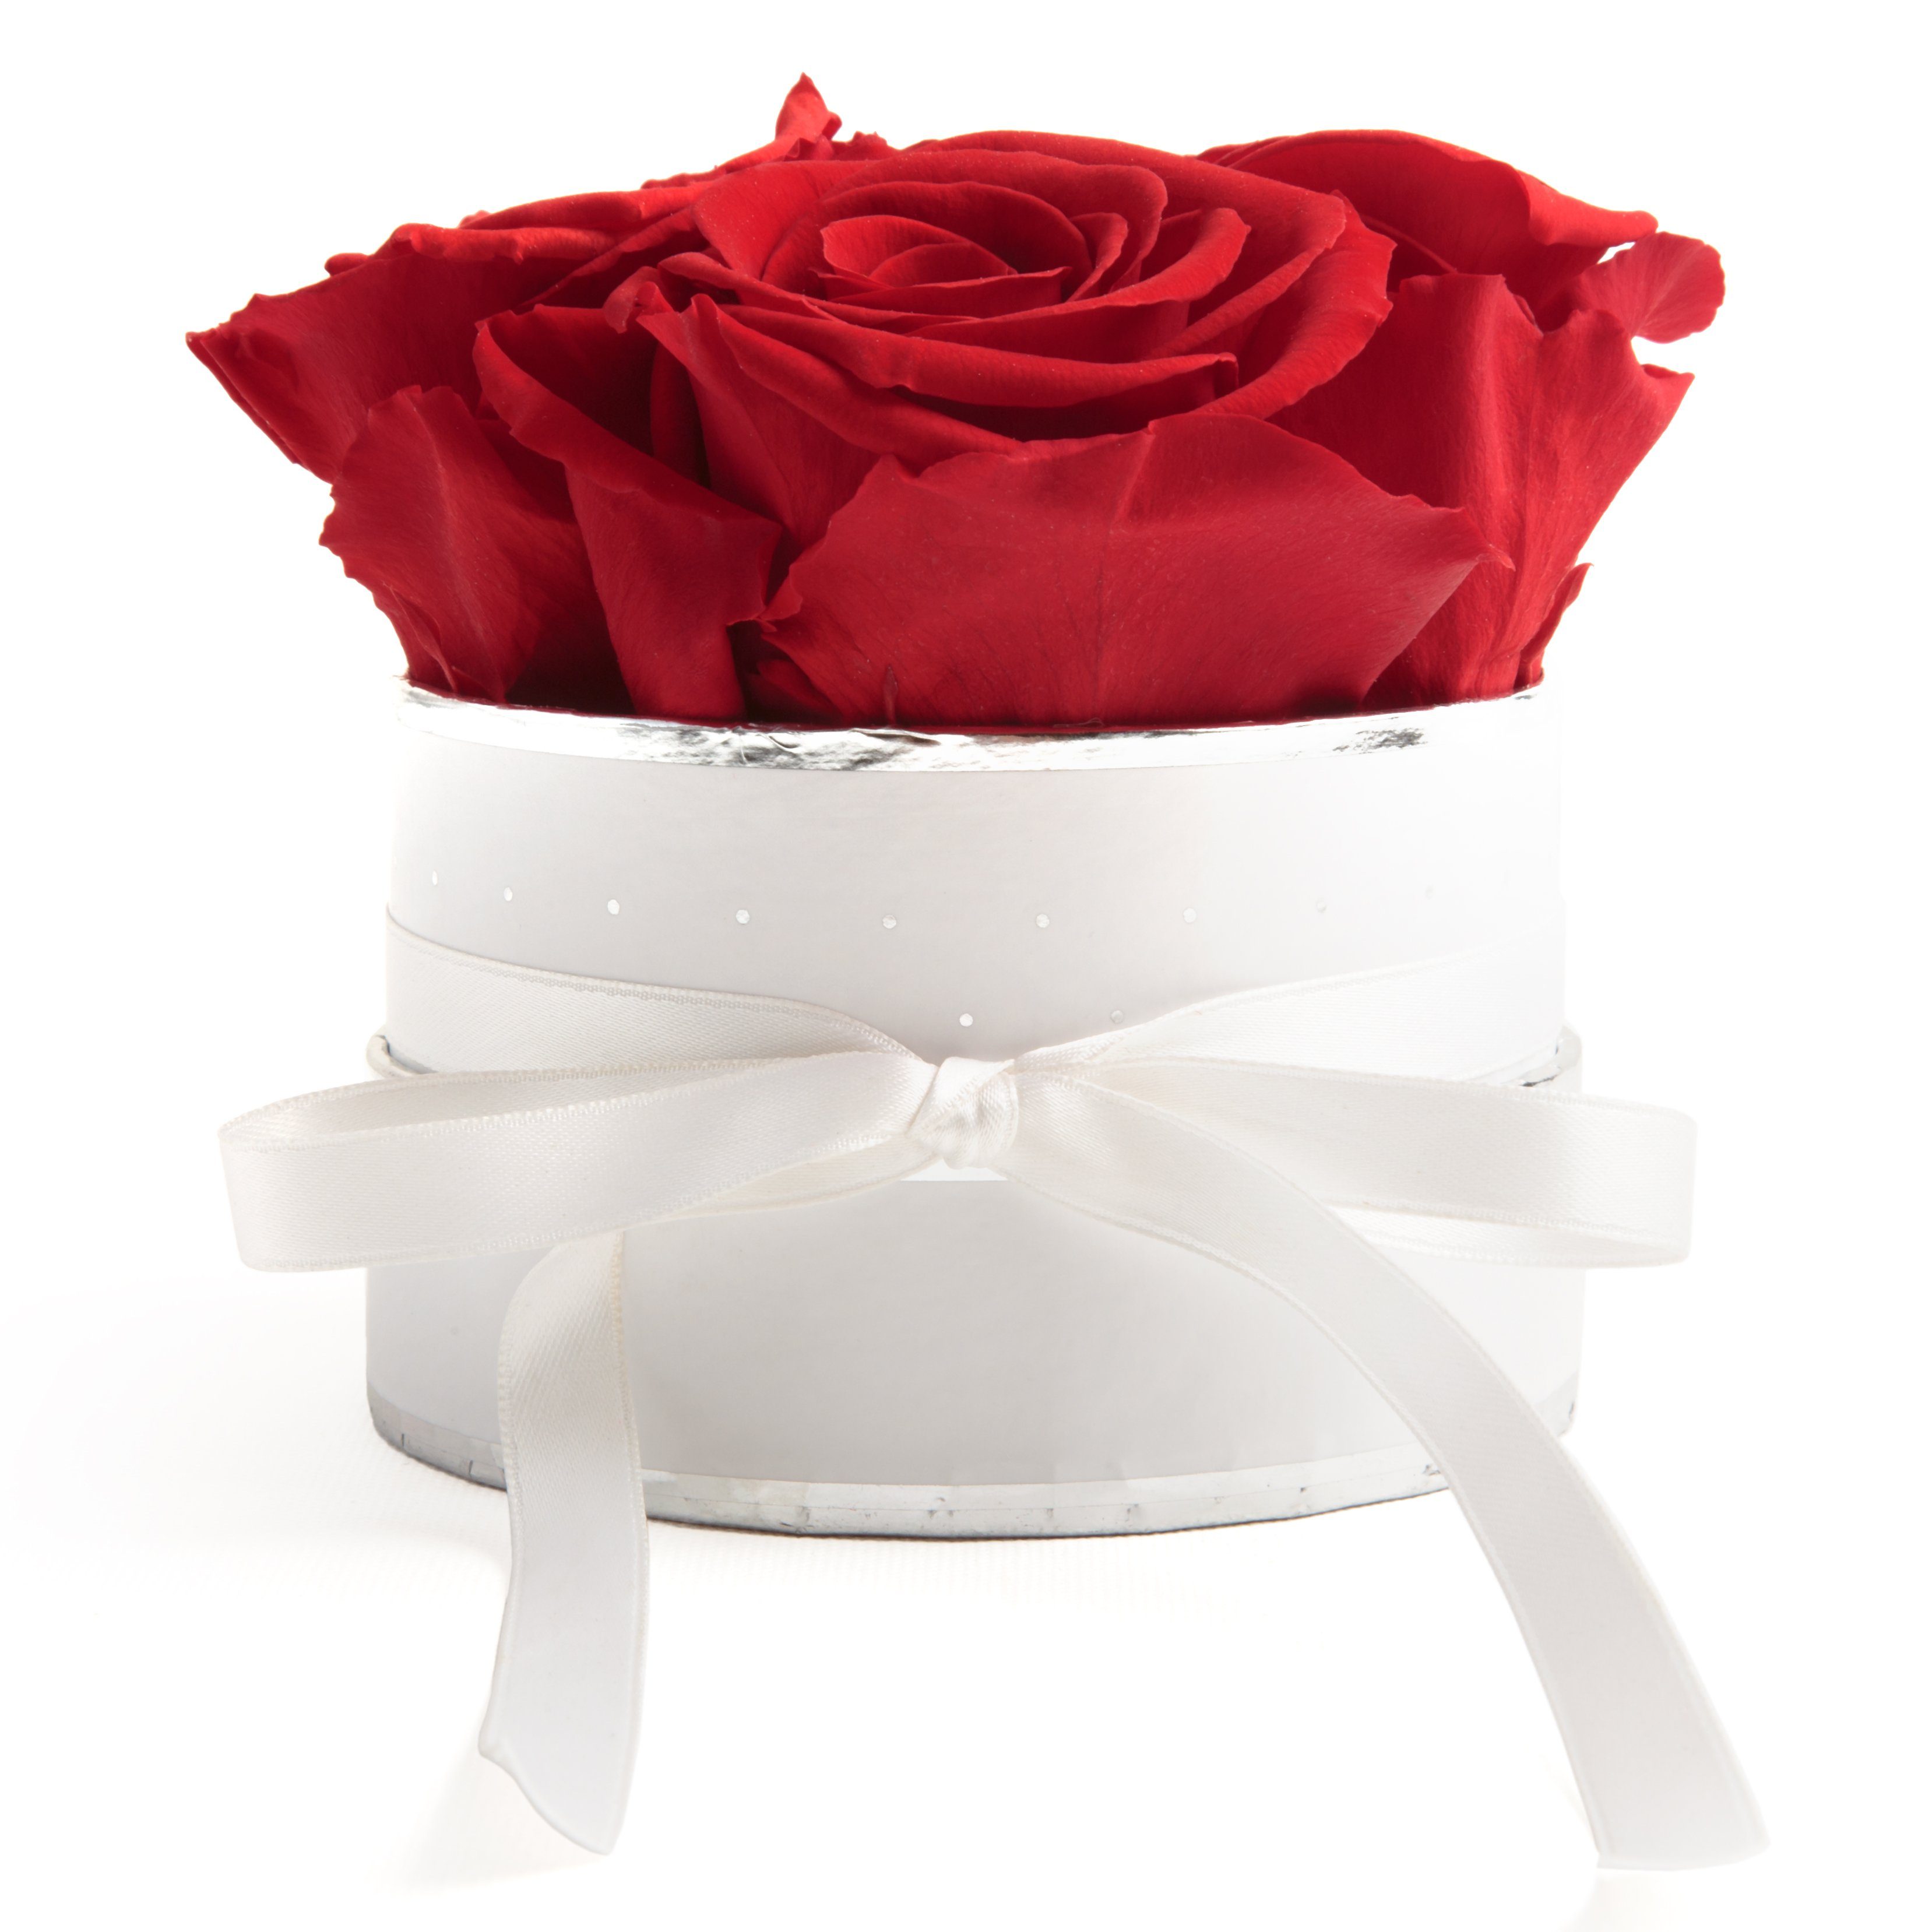 Kunstblume »Infinity Rosenbox weiß rund 4 konservierte Rosen Geschenk Frau«  Rose, ROSEMARIE SCHULZ Heidelberg, Höhe 10 cm, echte Rosen haltbar 3 Jahre  online kaufen | OTTO